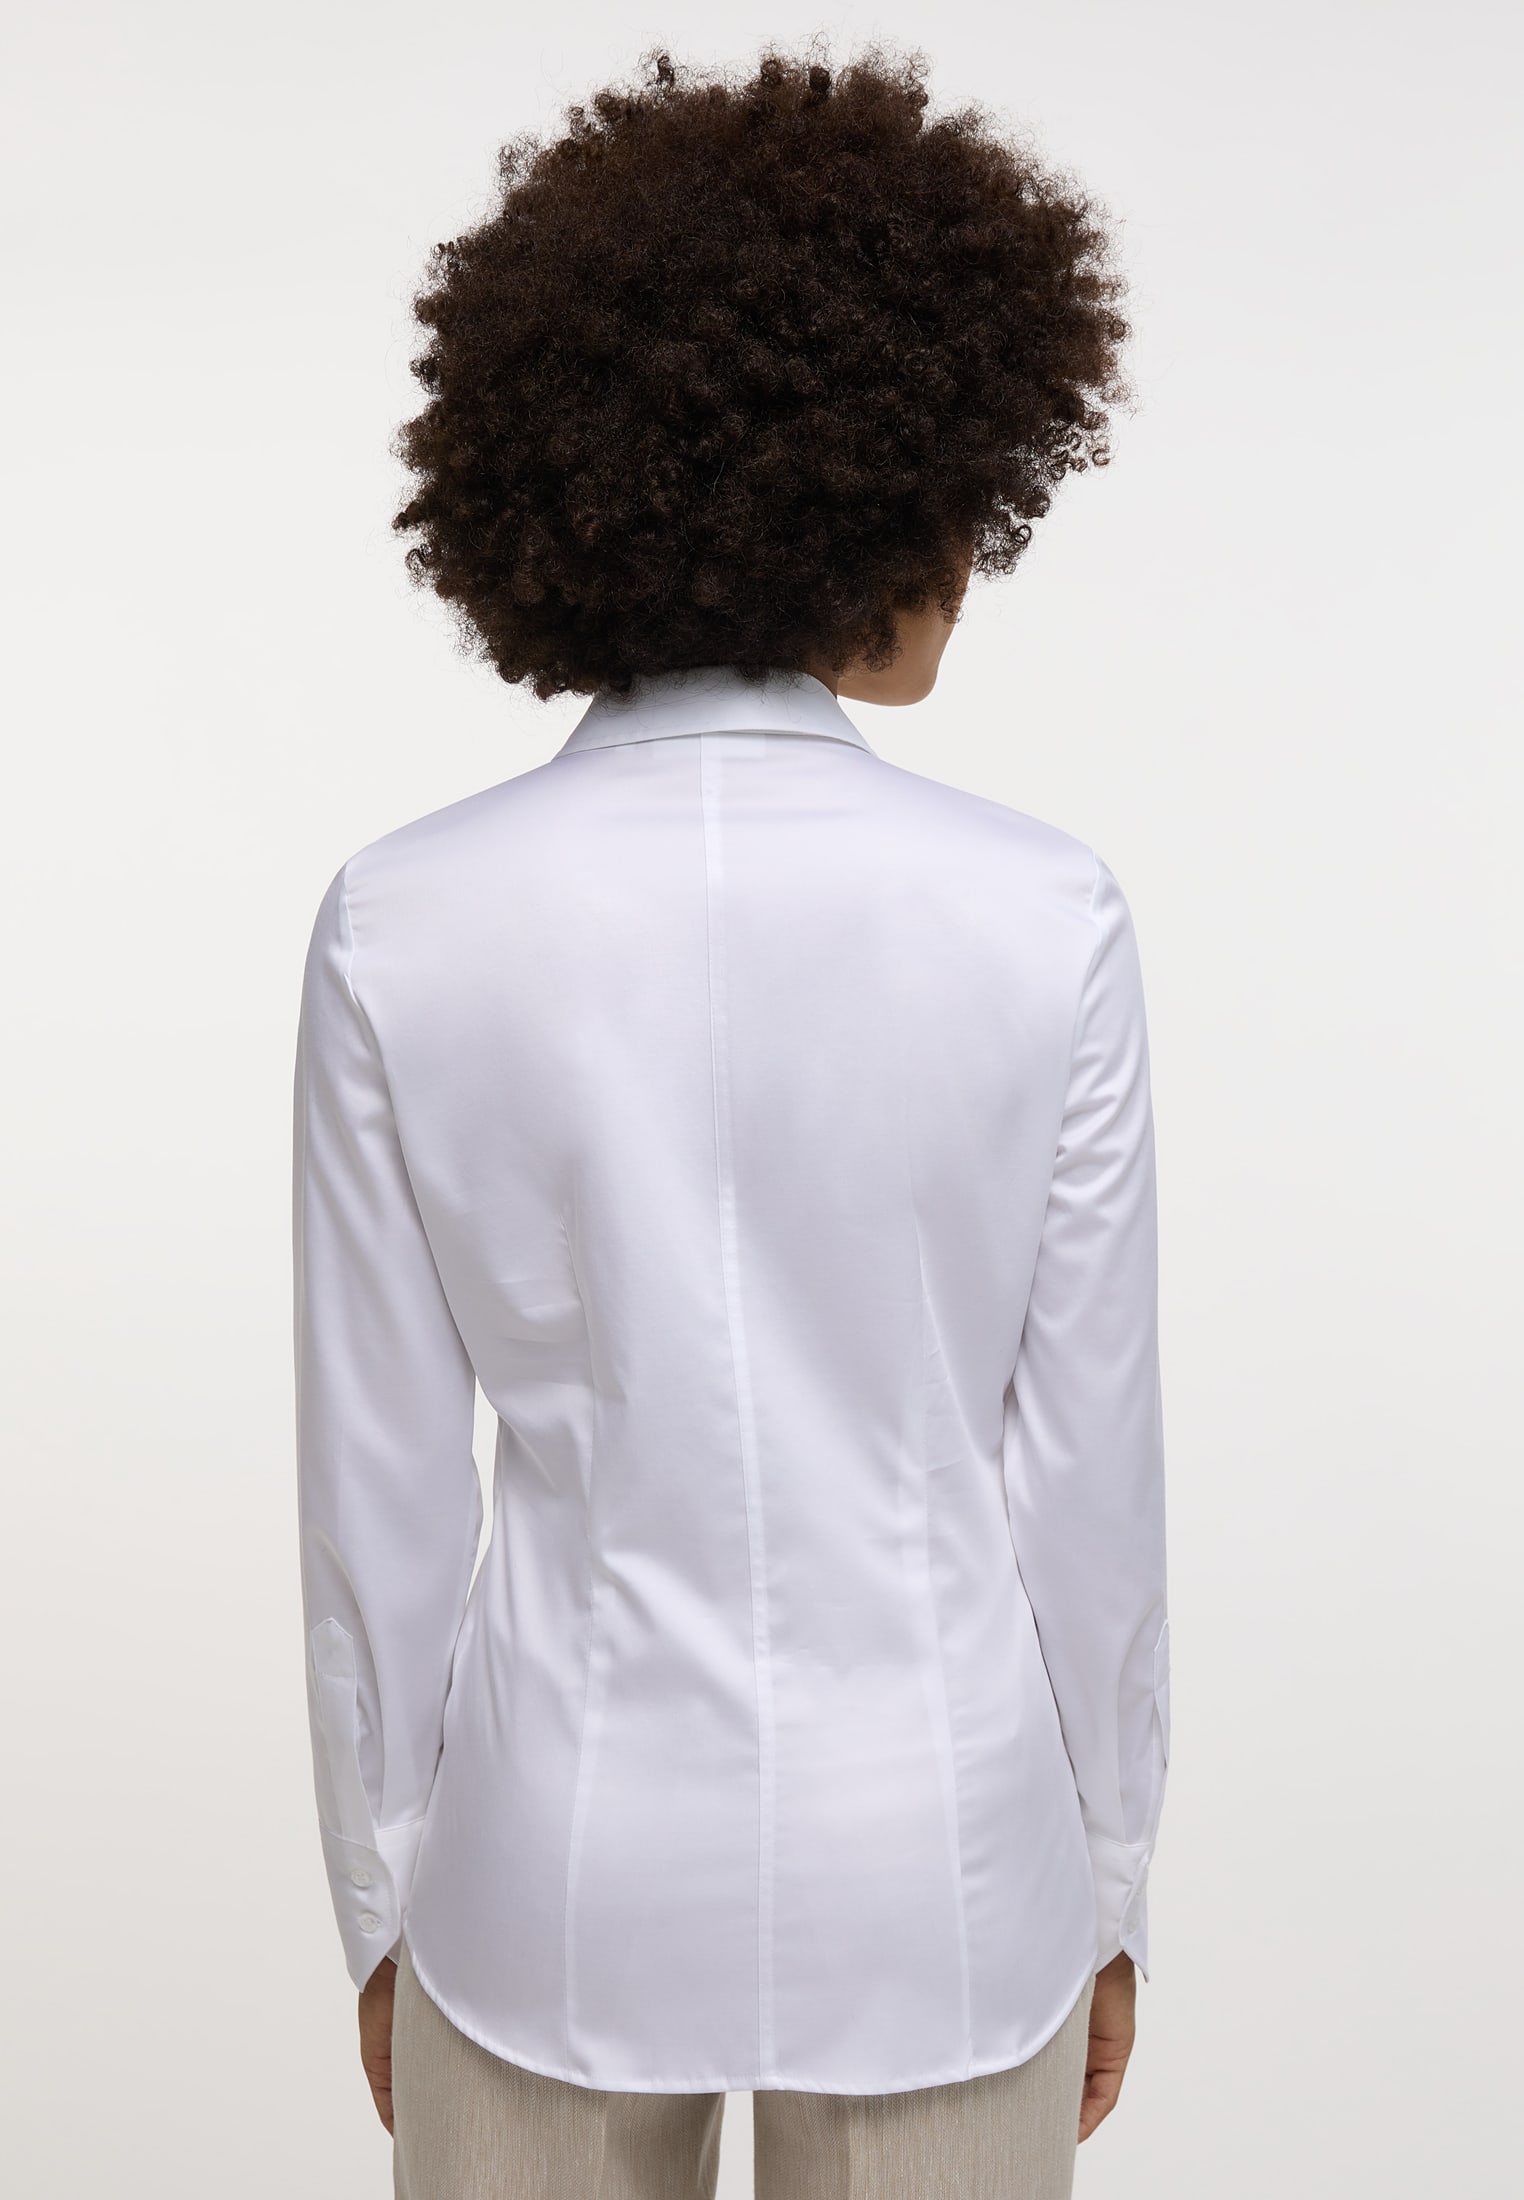 Satin Shirt Blouse in white plain, white, 42, long sleeve